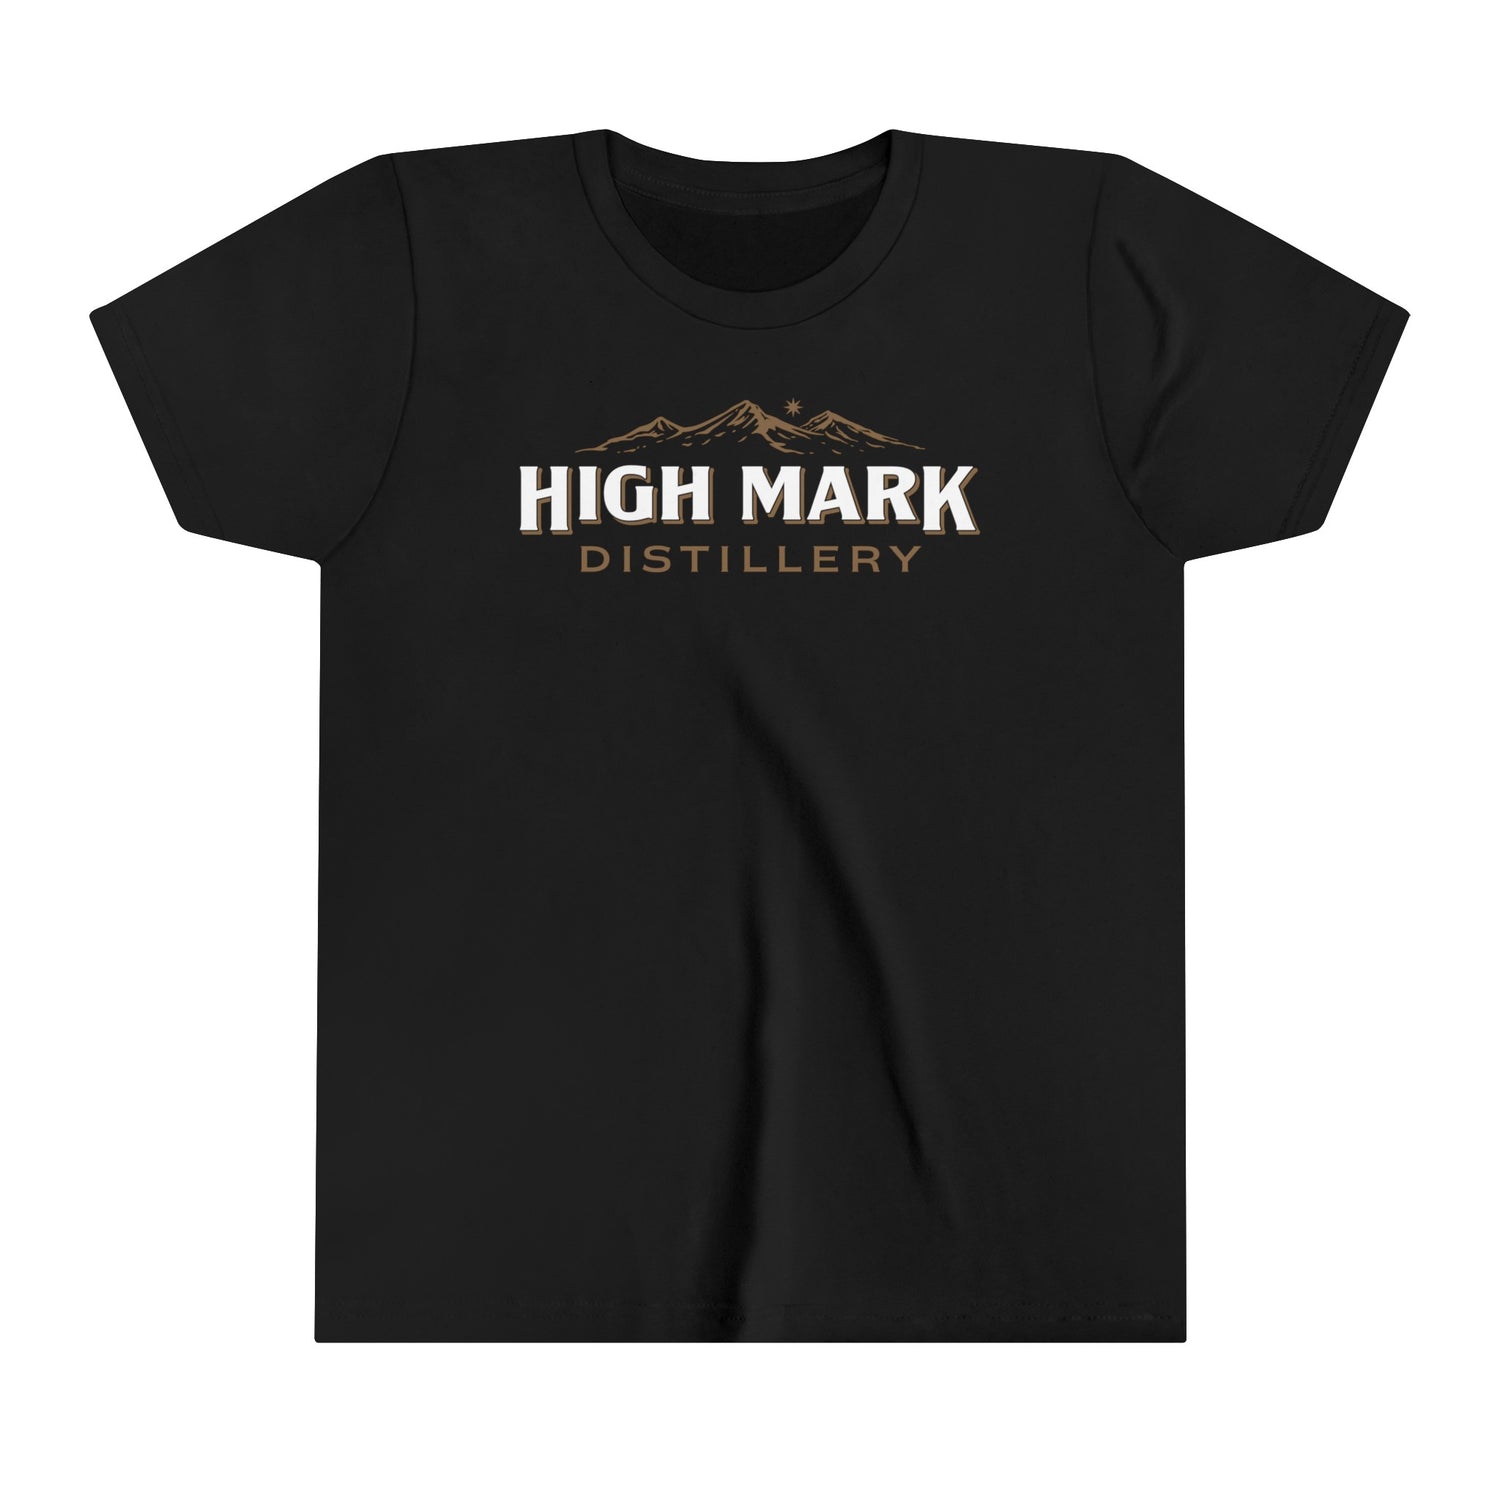 High Mark Distillery - Youth Short Sleeve Tee